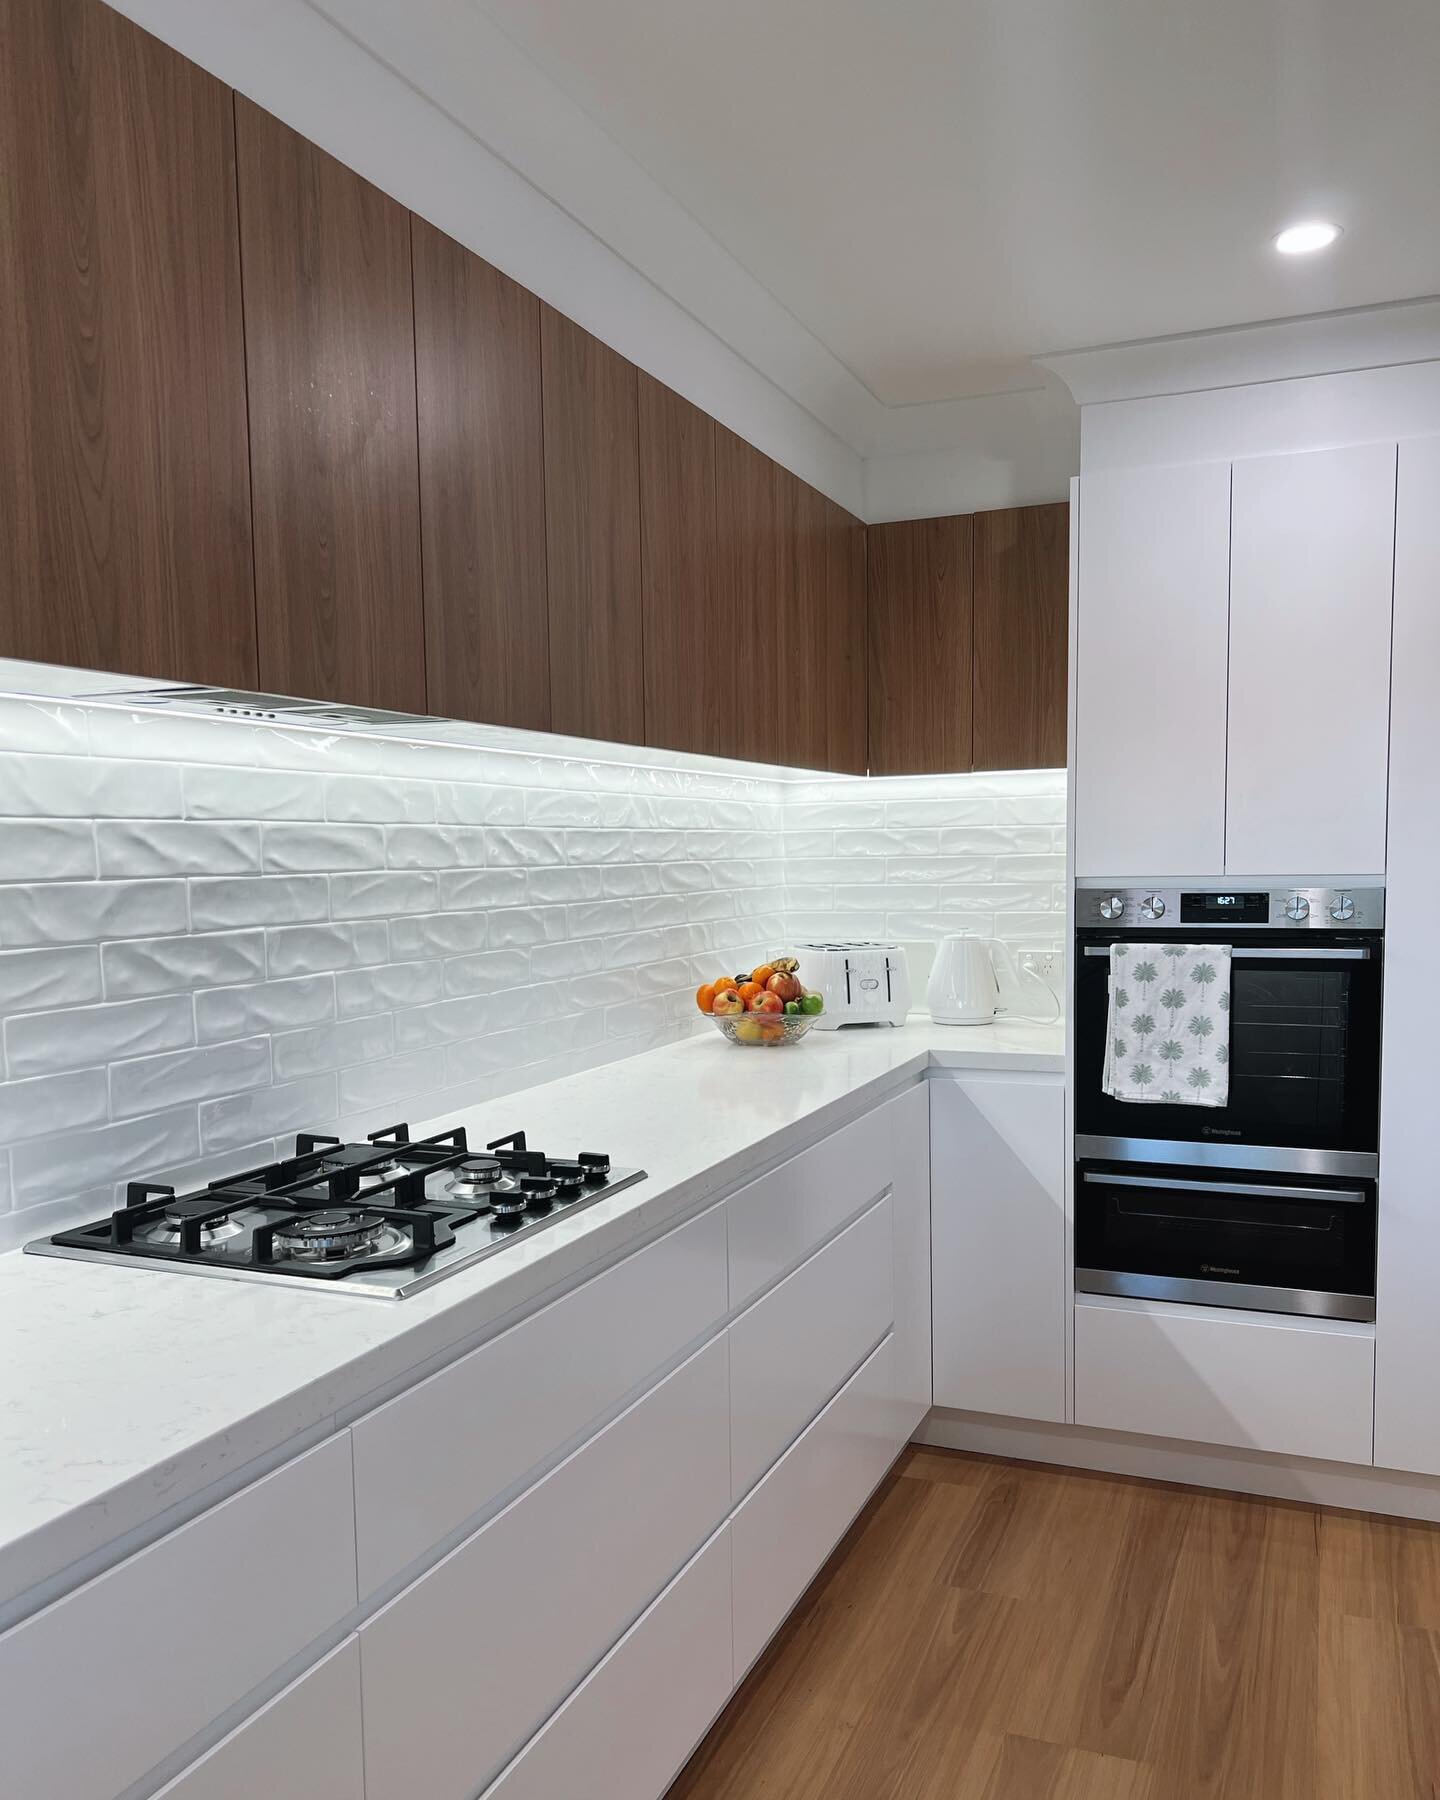 Wattle Grove Kitchen Reno.

#kitchendesign #kitchenrenovation #kitchendecor #sydneybuilder #tile #splashback #renovations #buildersaustralia #kitcheninspiration